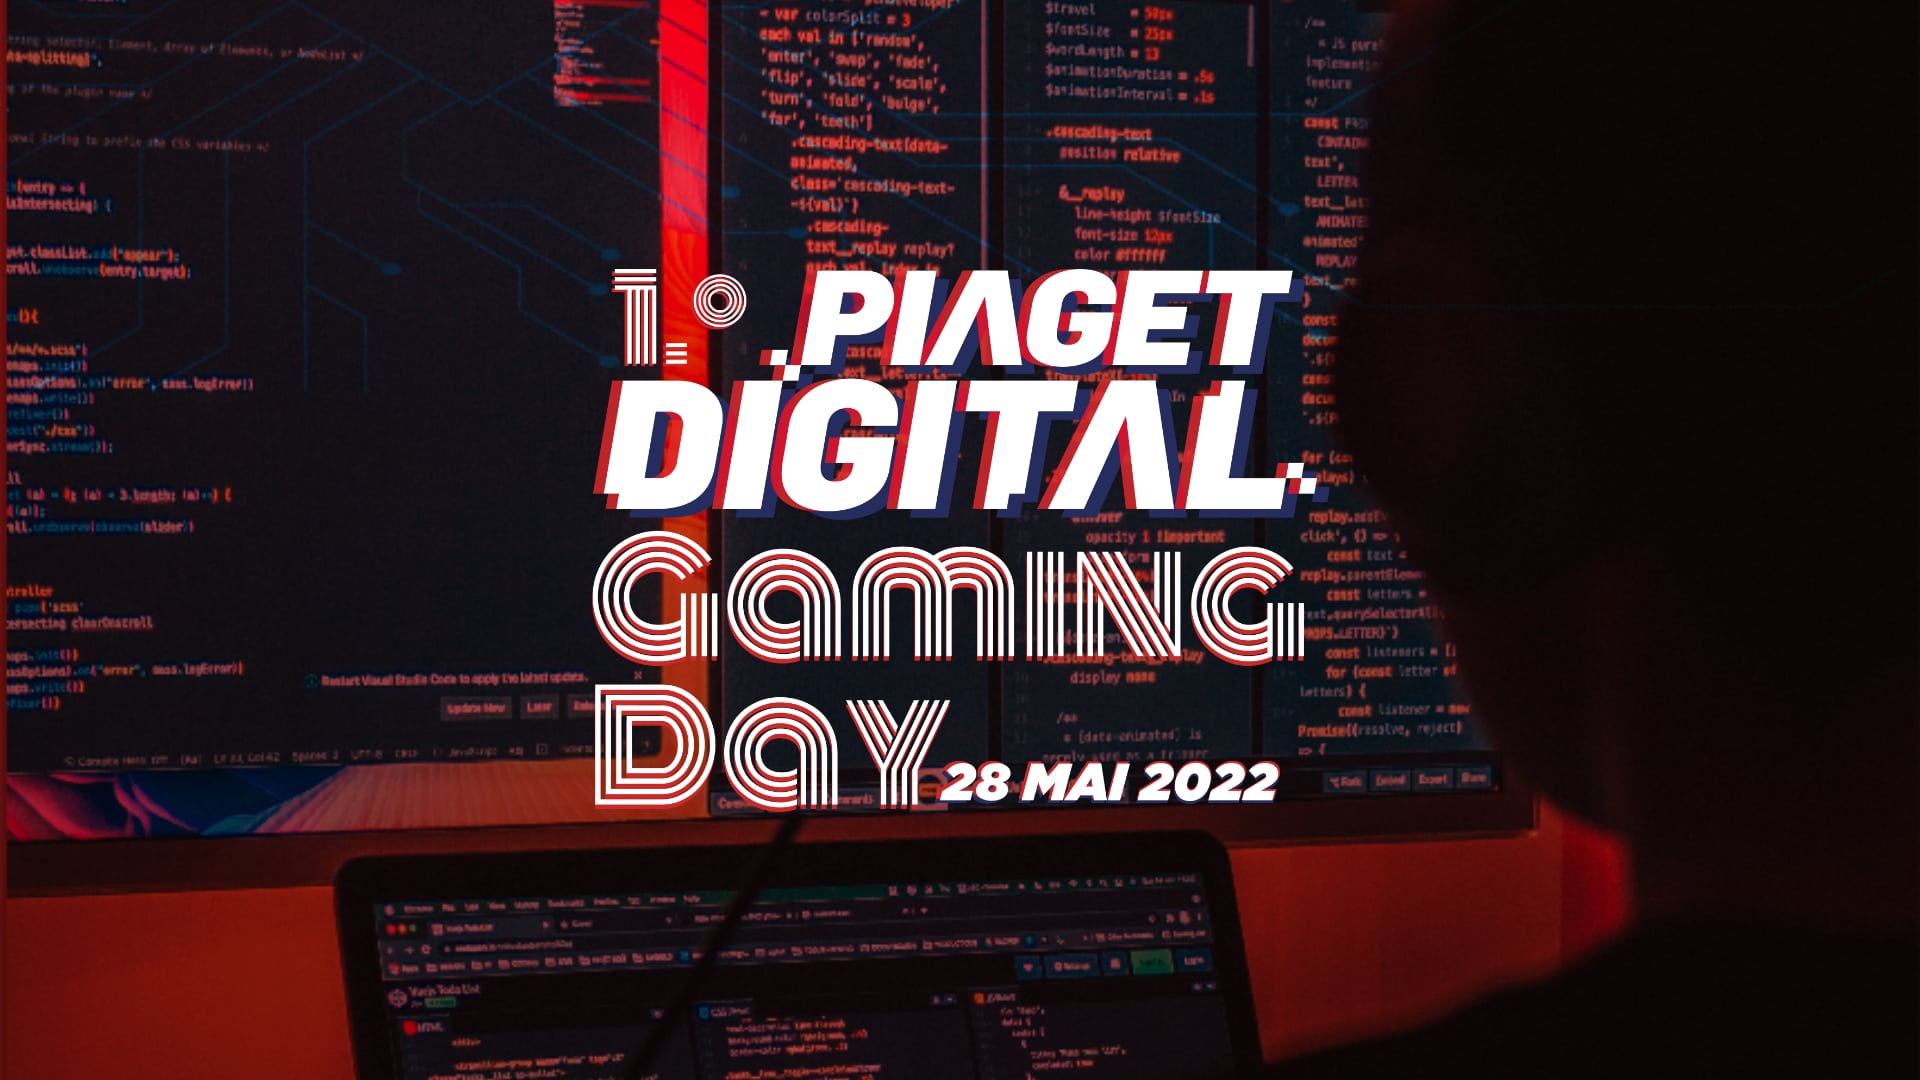 Vem aí o 1.º Piaget Digital Gaming Day numa iniciativa da ESTG de Almada